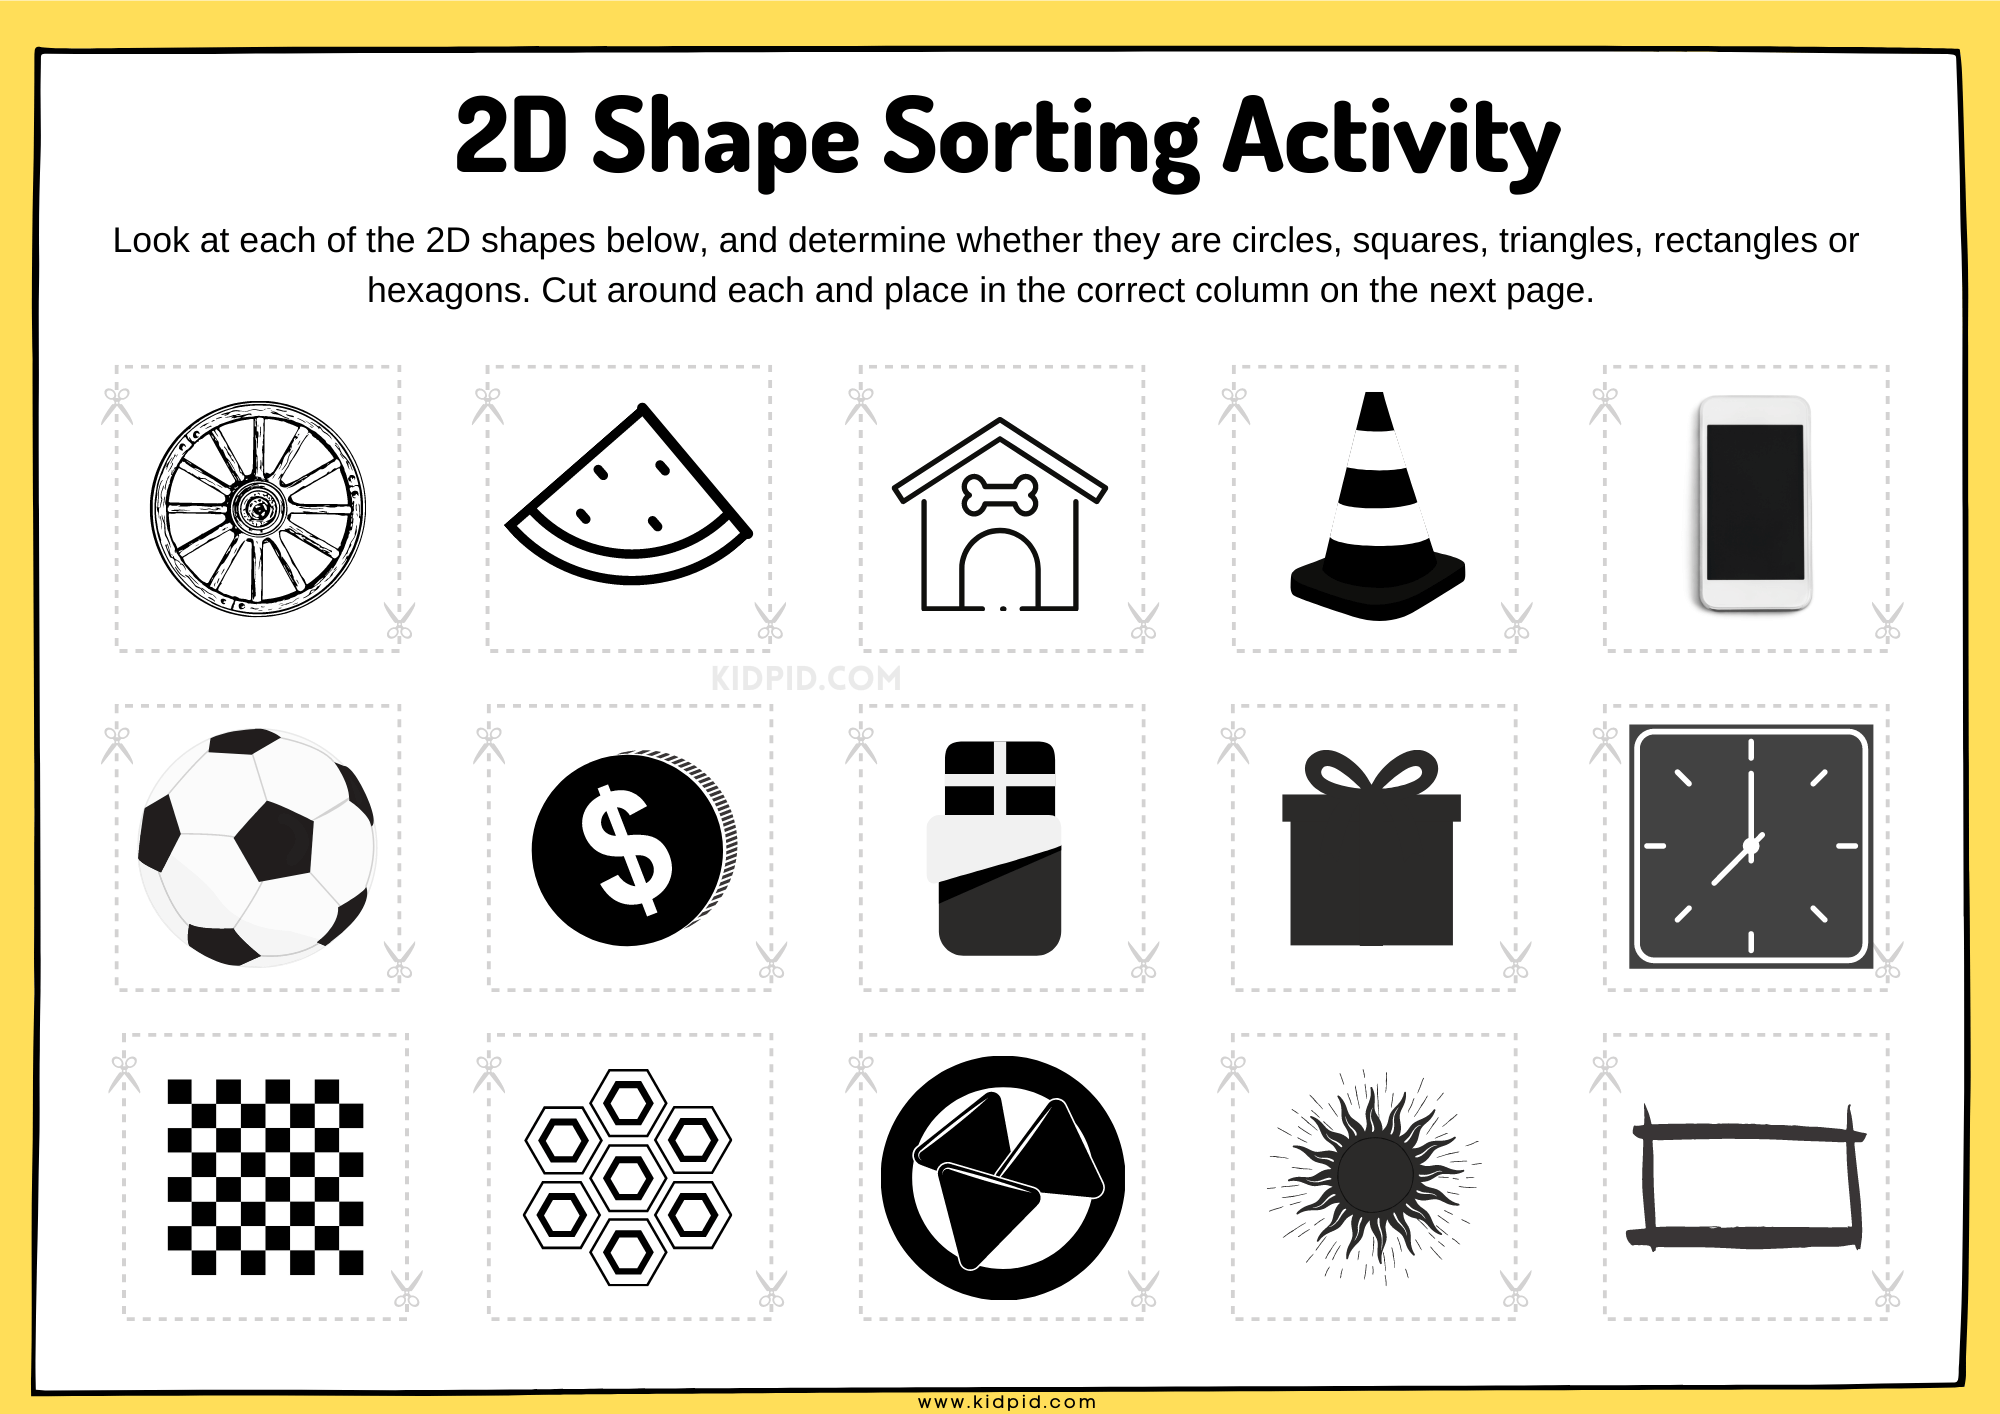 2D Shape Sorting Worksheet - Kidpid